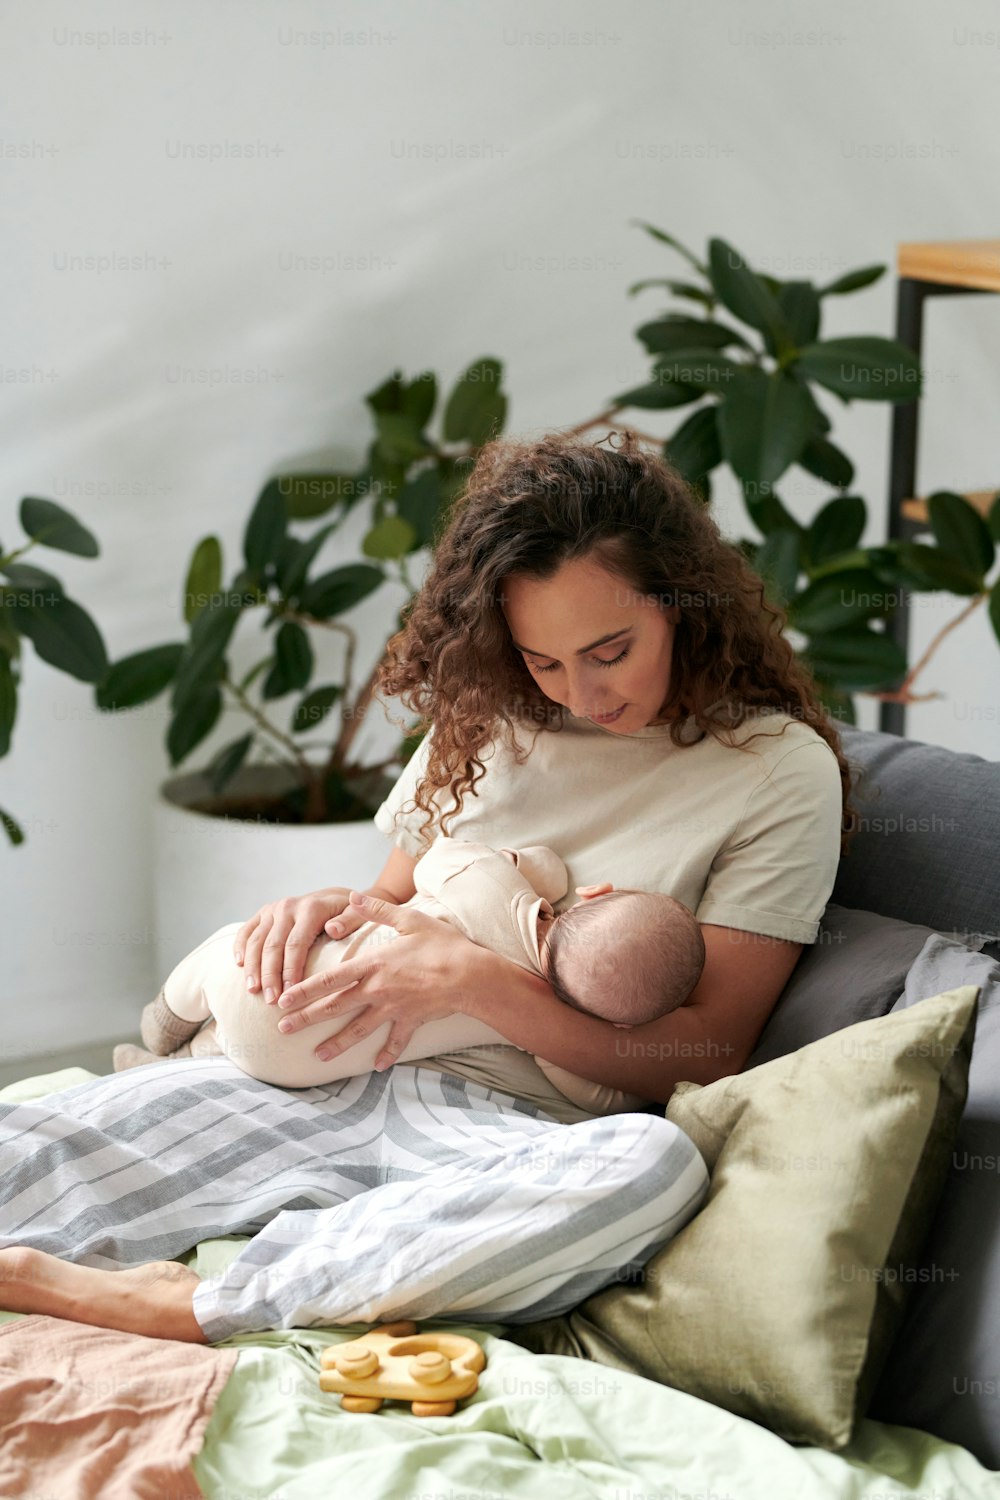 홈웨어를 입은 젊은 엄마는 침실의 더블 침대에서 쿠션 옆에서 휴식을 취하고 귀여운 아기를 재우고 있다